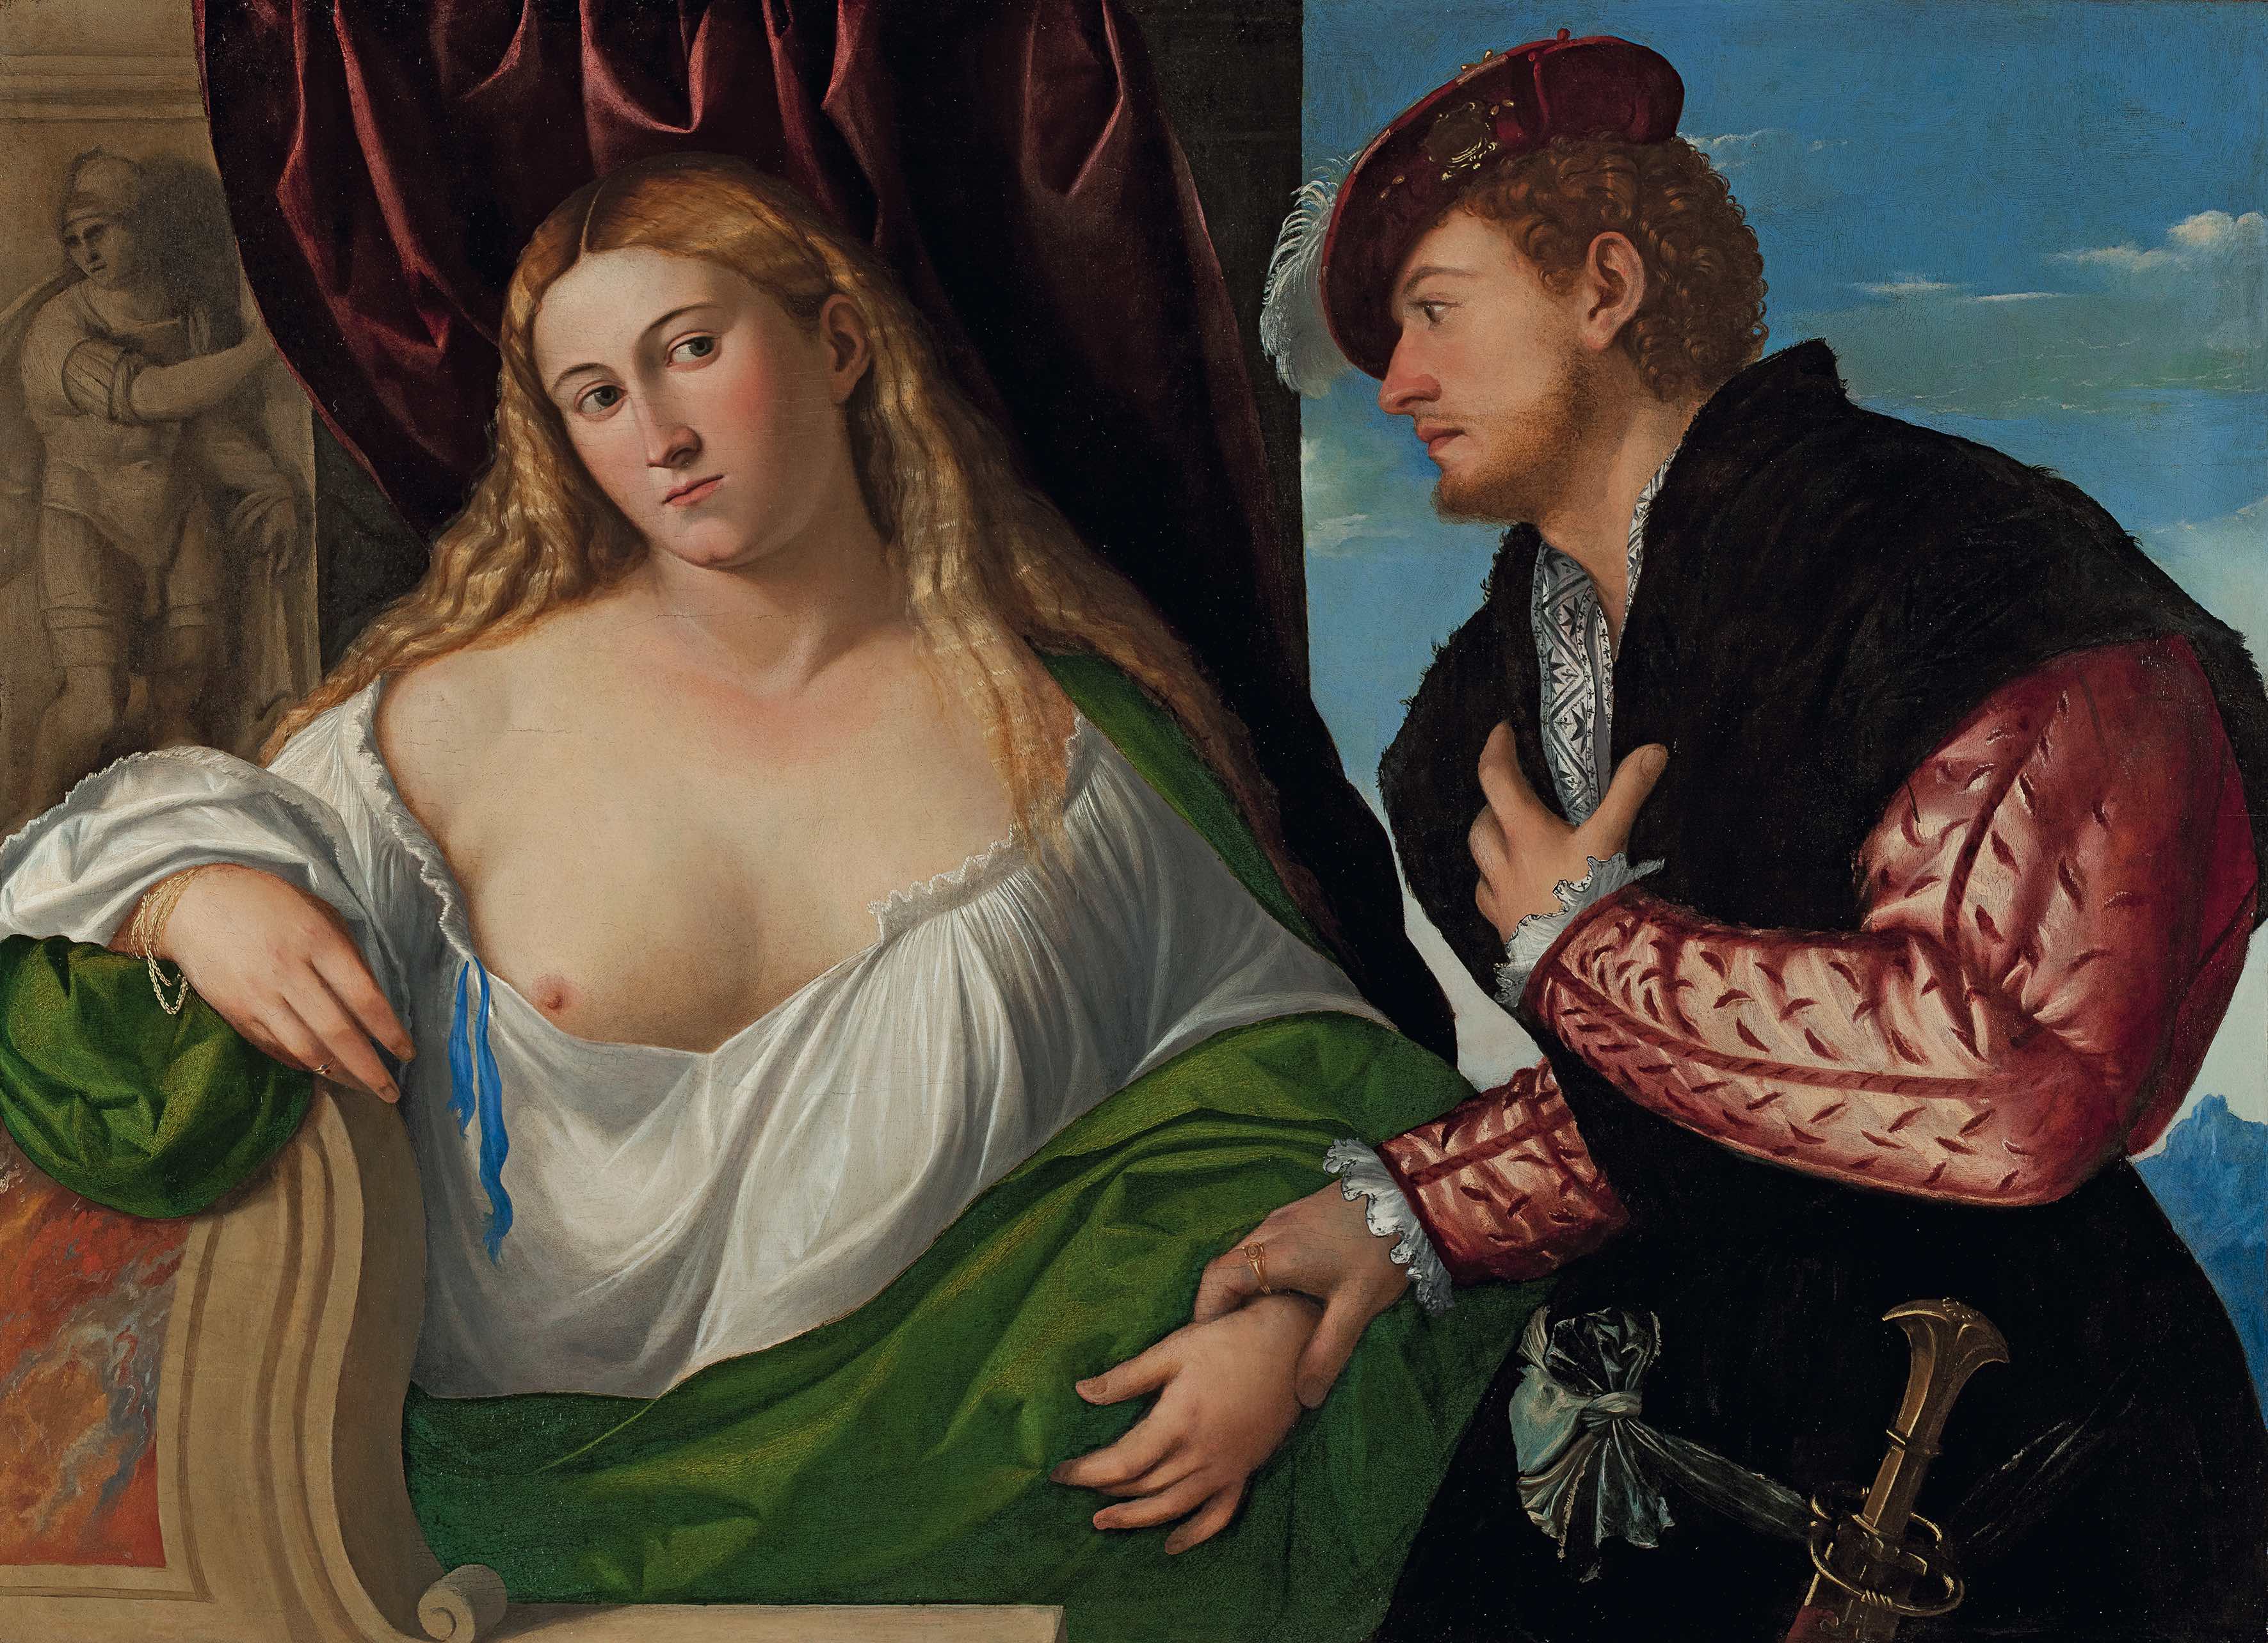 Bernardino Licinio, Giovane donna con il suo promesso sposo (1520 circa; olio su tavola, 81,3 x 114,3 cm; Parigi, Galerie Canesso)
